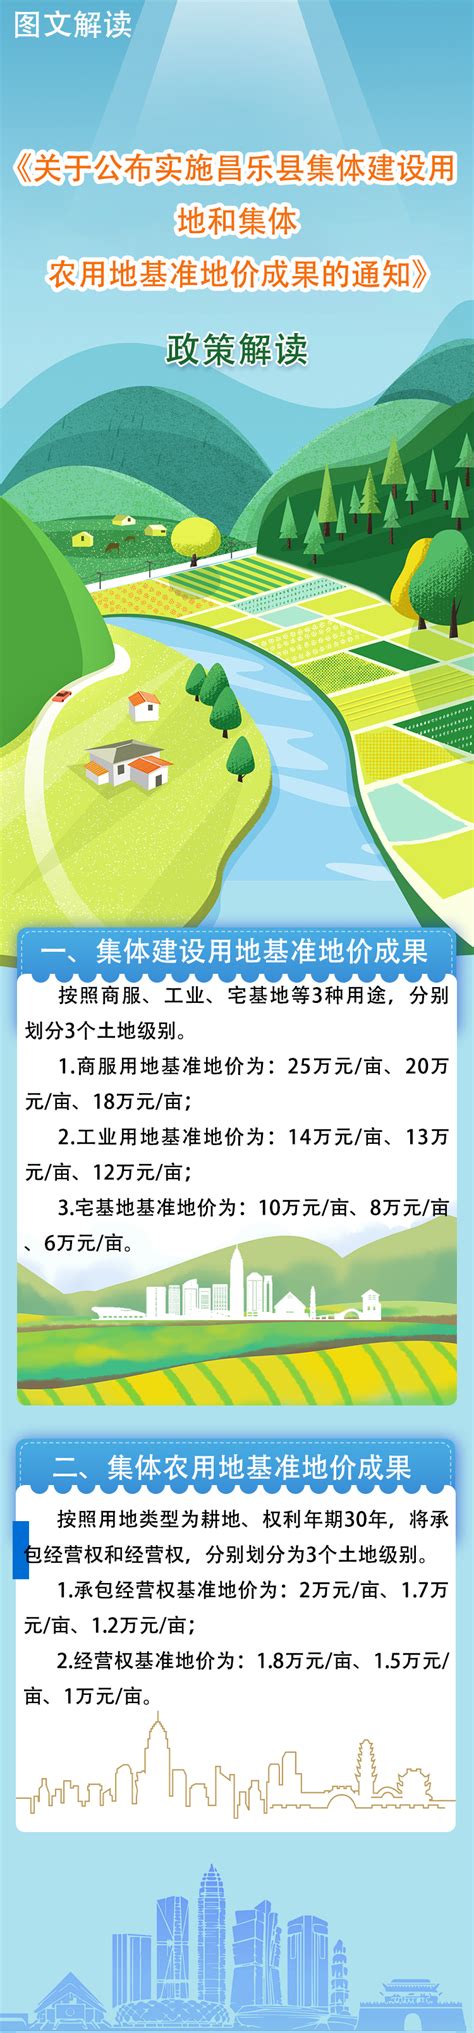 【图文解读】昌乐县人民政府办公室关于公布县政府2022年重大行政决策事项目录的通知